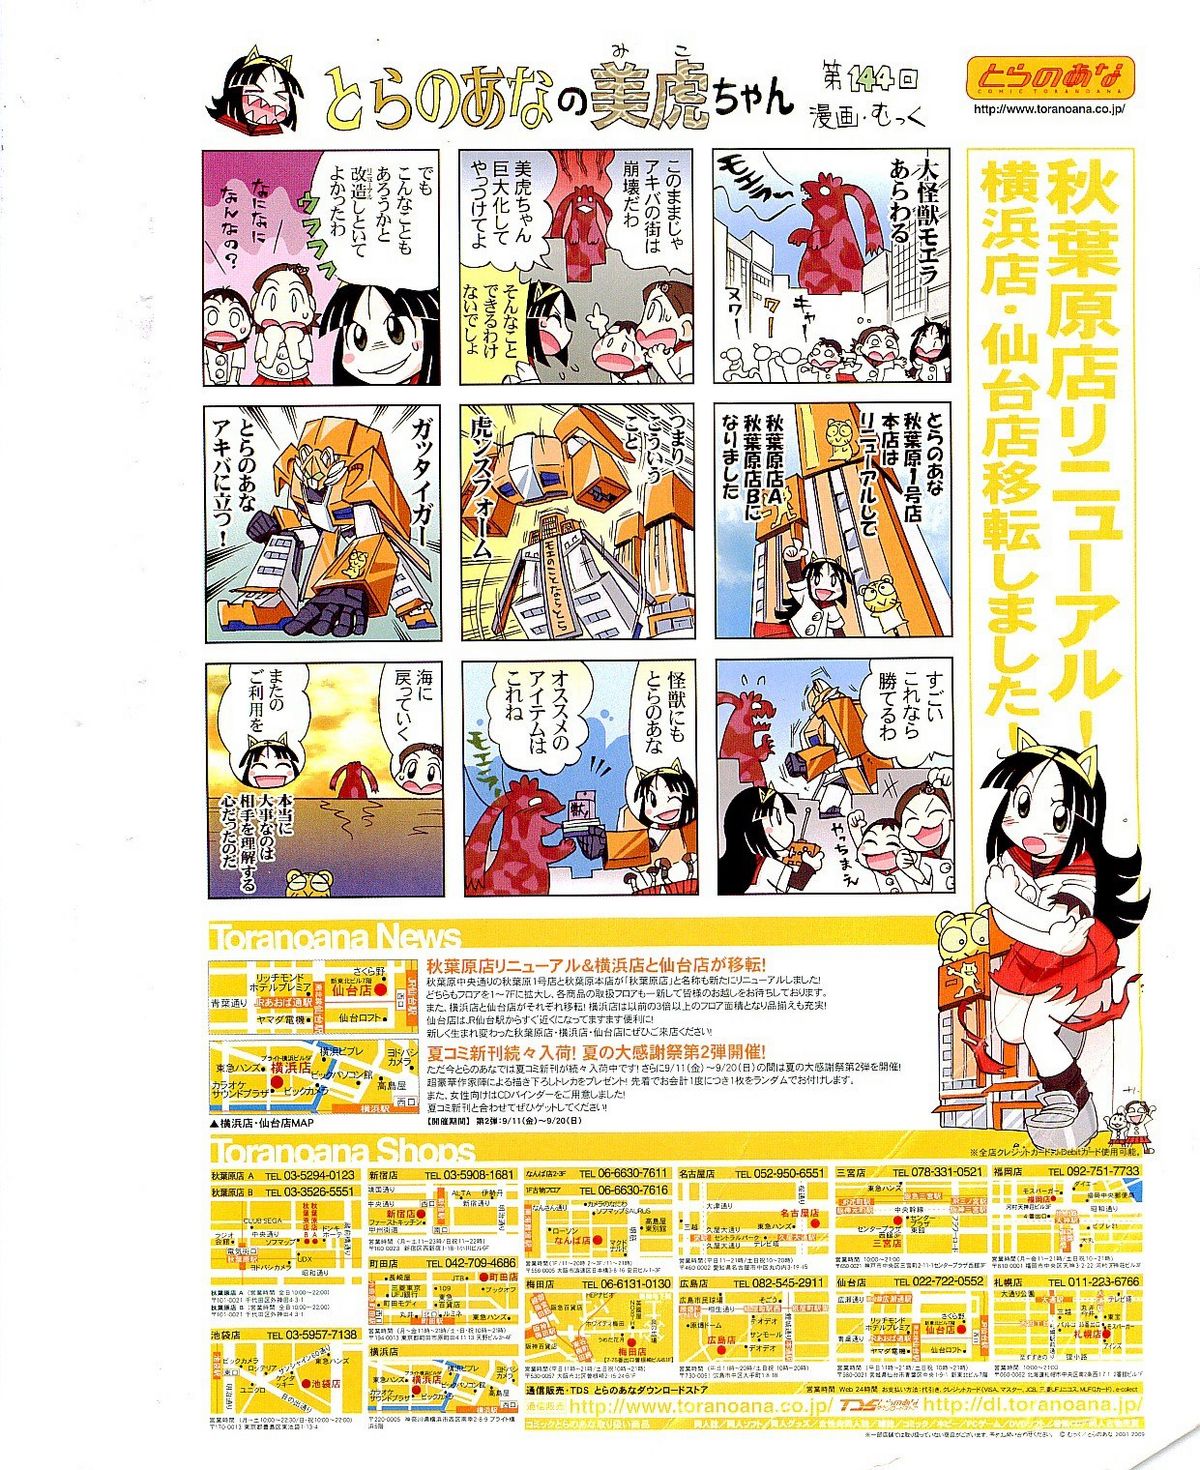 COMIC AUN 2009-10 Vol. 160 COMIC 阿吽 2009年10月号 VOL.160